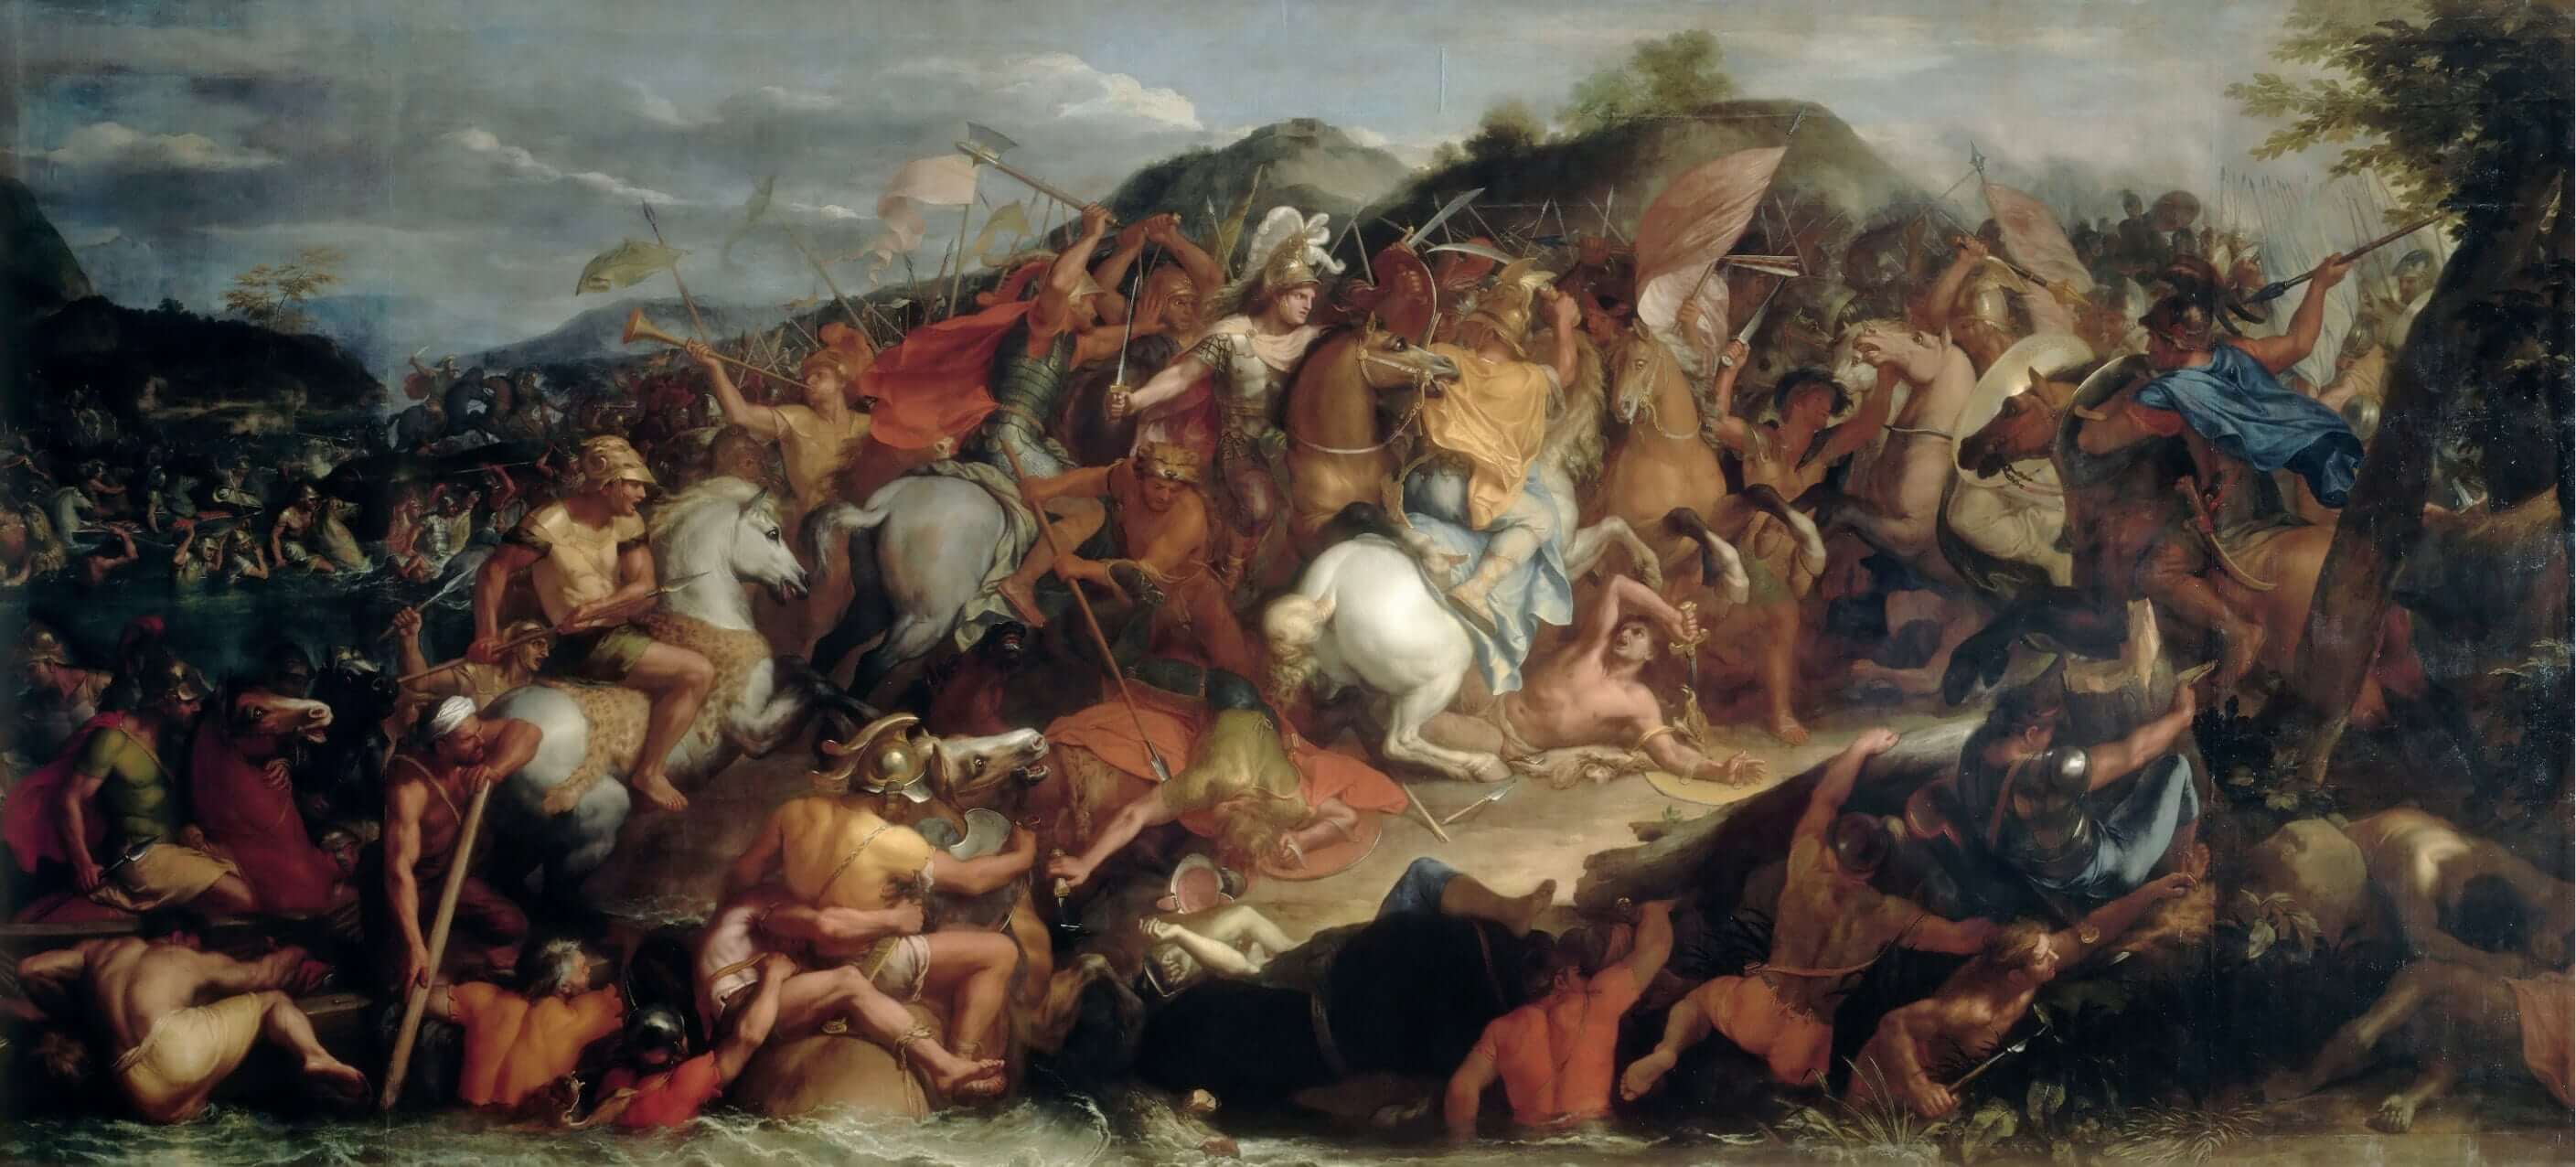 Η θρυλική Μάχη του Γρανικού: Ο Μέγας Αλέξανδρος κατατροπώνει και ταπεινώνει τους Πέρσες! [vid]